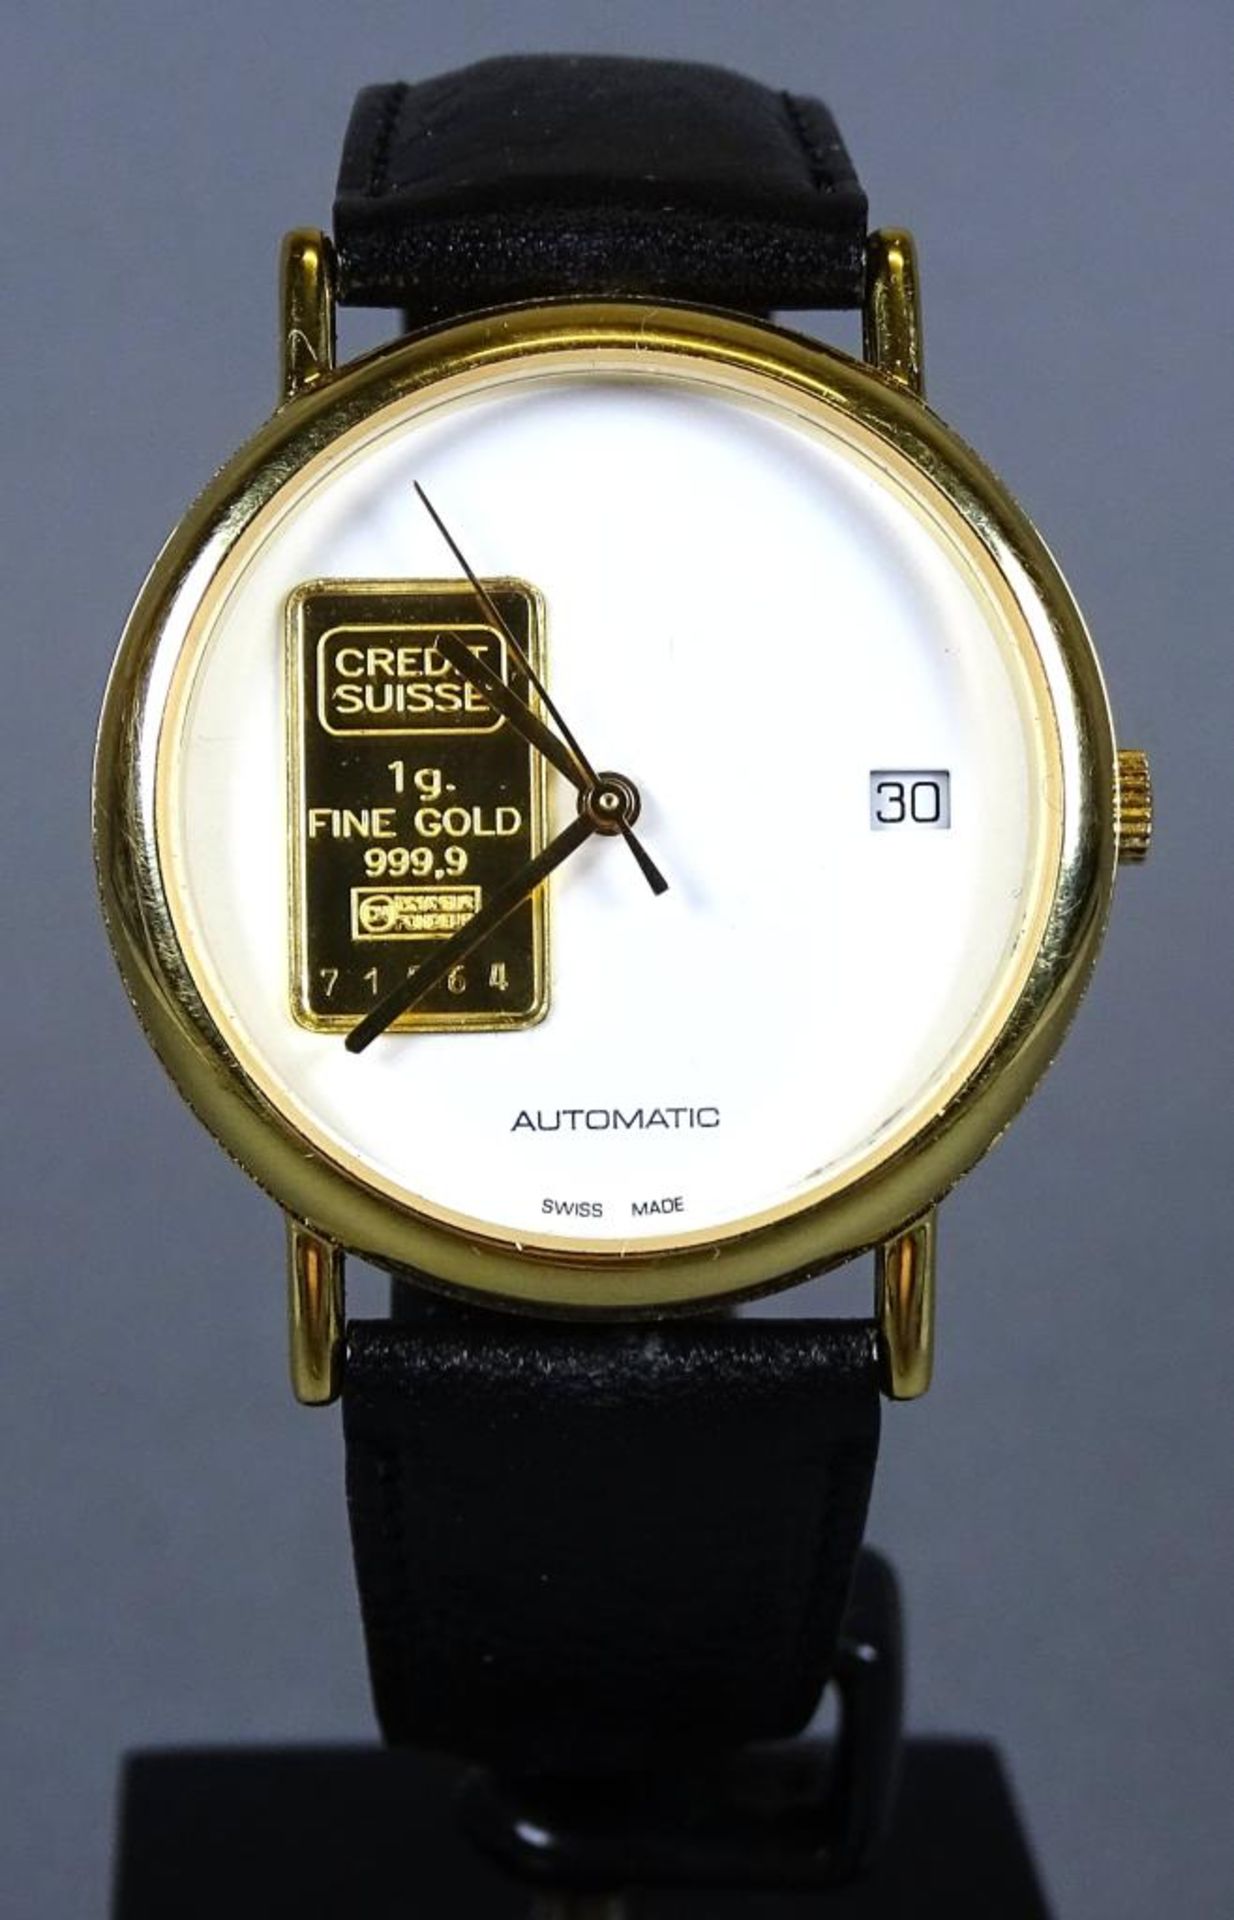 Armbanduhr "Credit Suisse" Goldbarren -999- 1 Gramm, automatik Werk,Werk läuft,swiss made,vergoldete